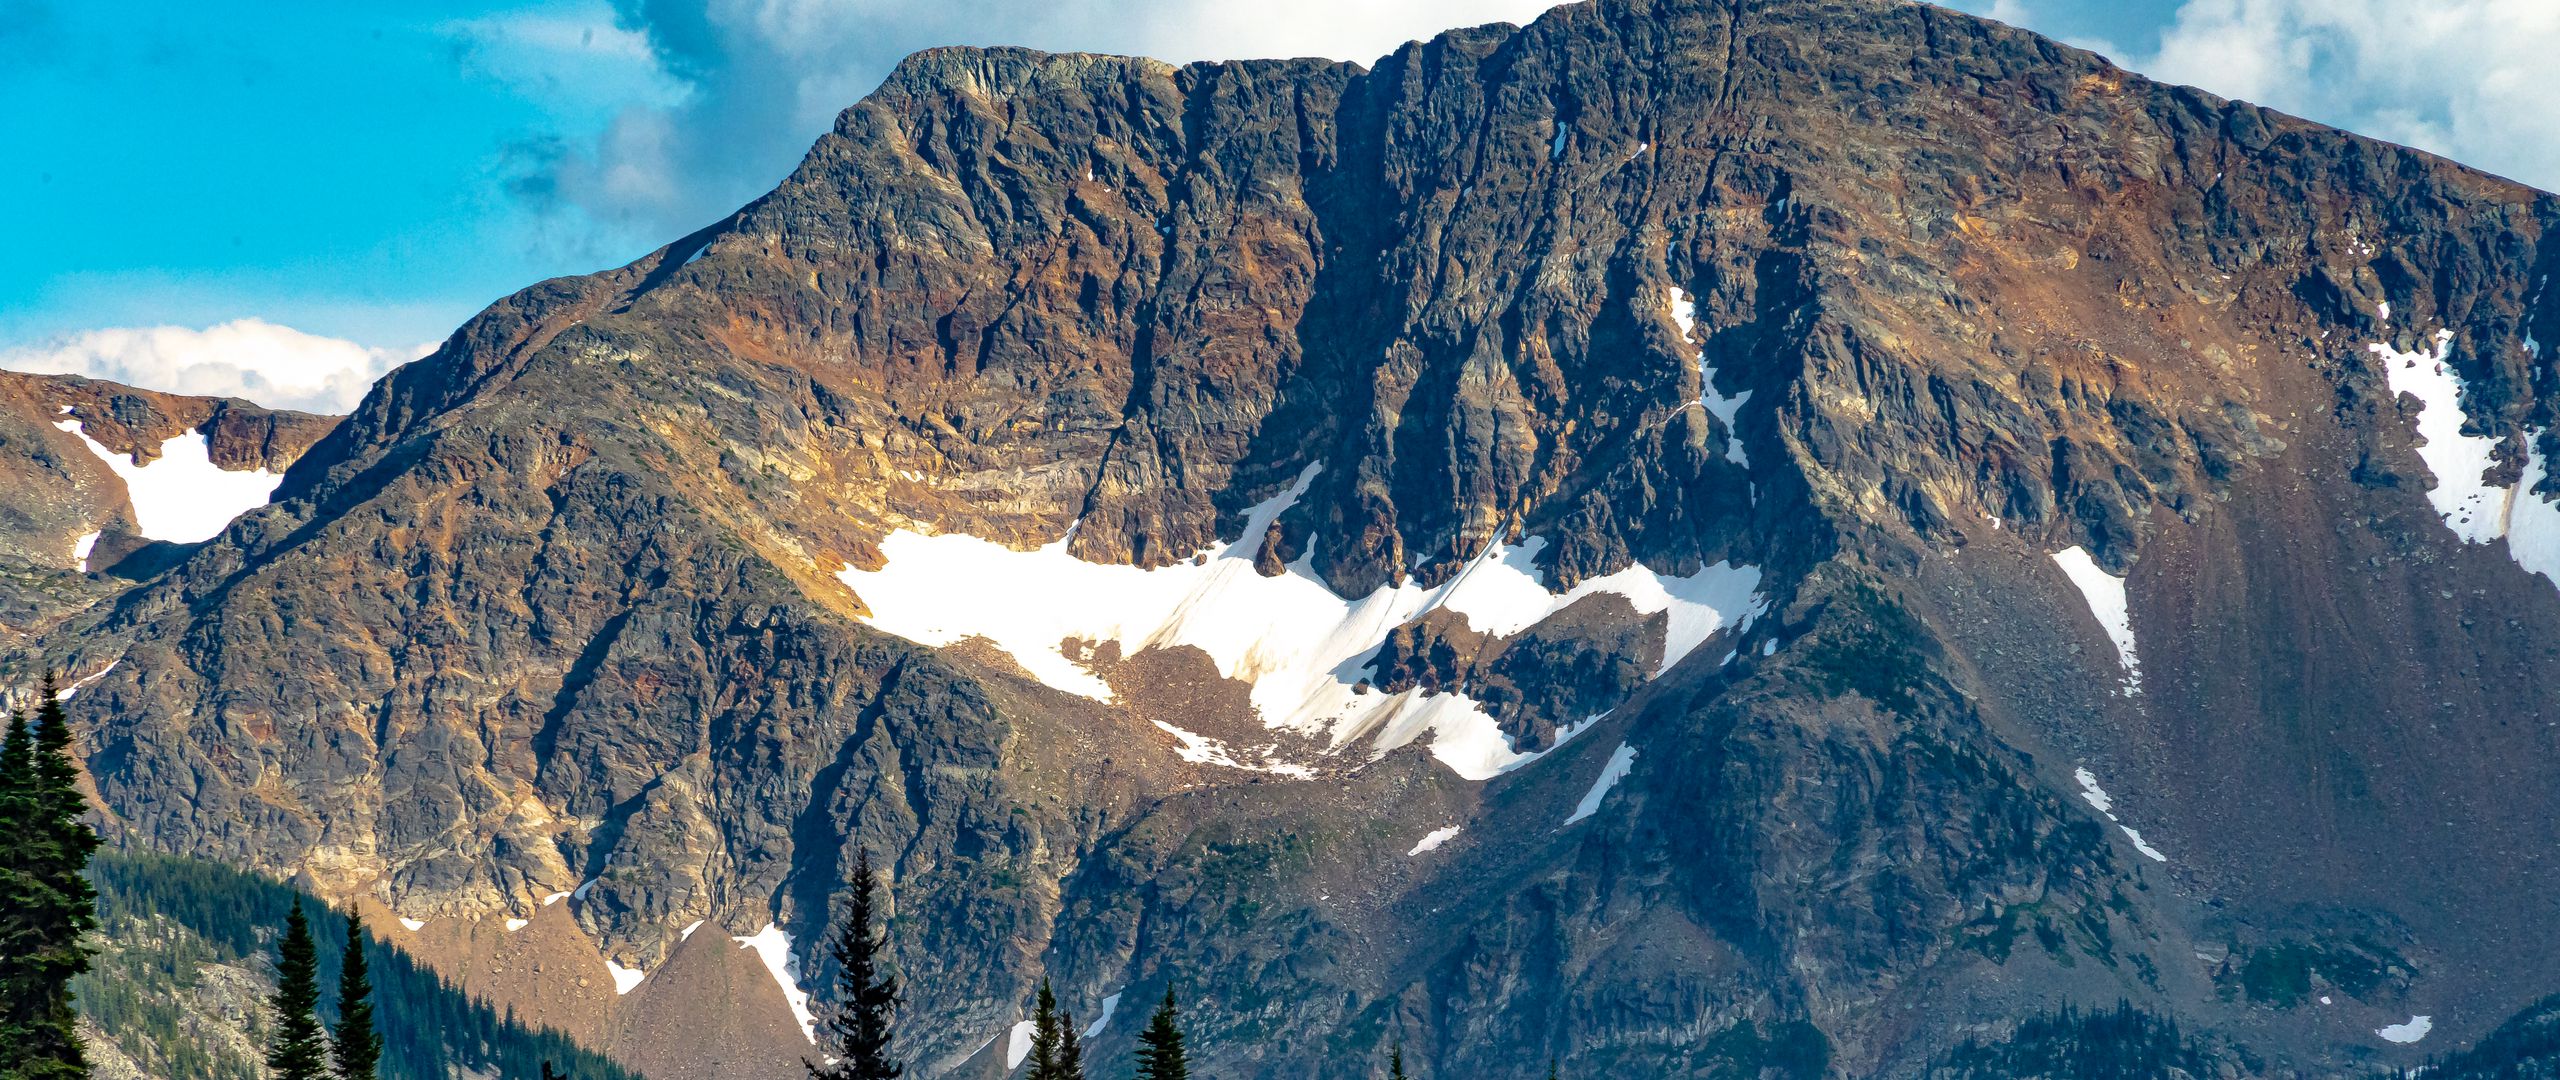 Download Wallpaper 2560x1080 Mountain Peak Trees Landscape Dual Wide